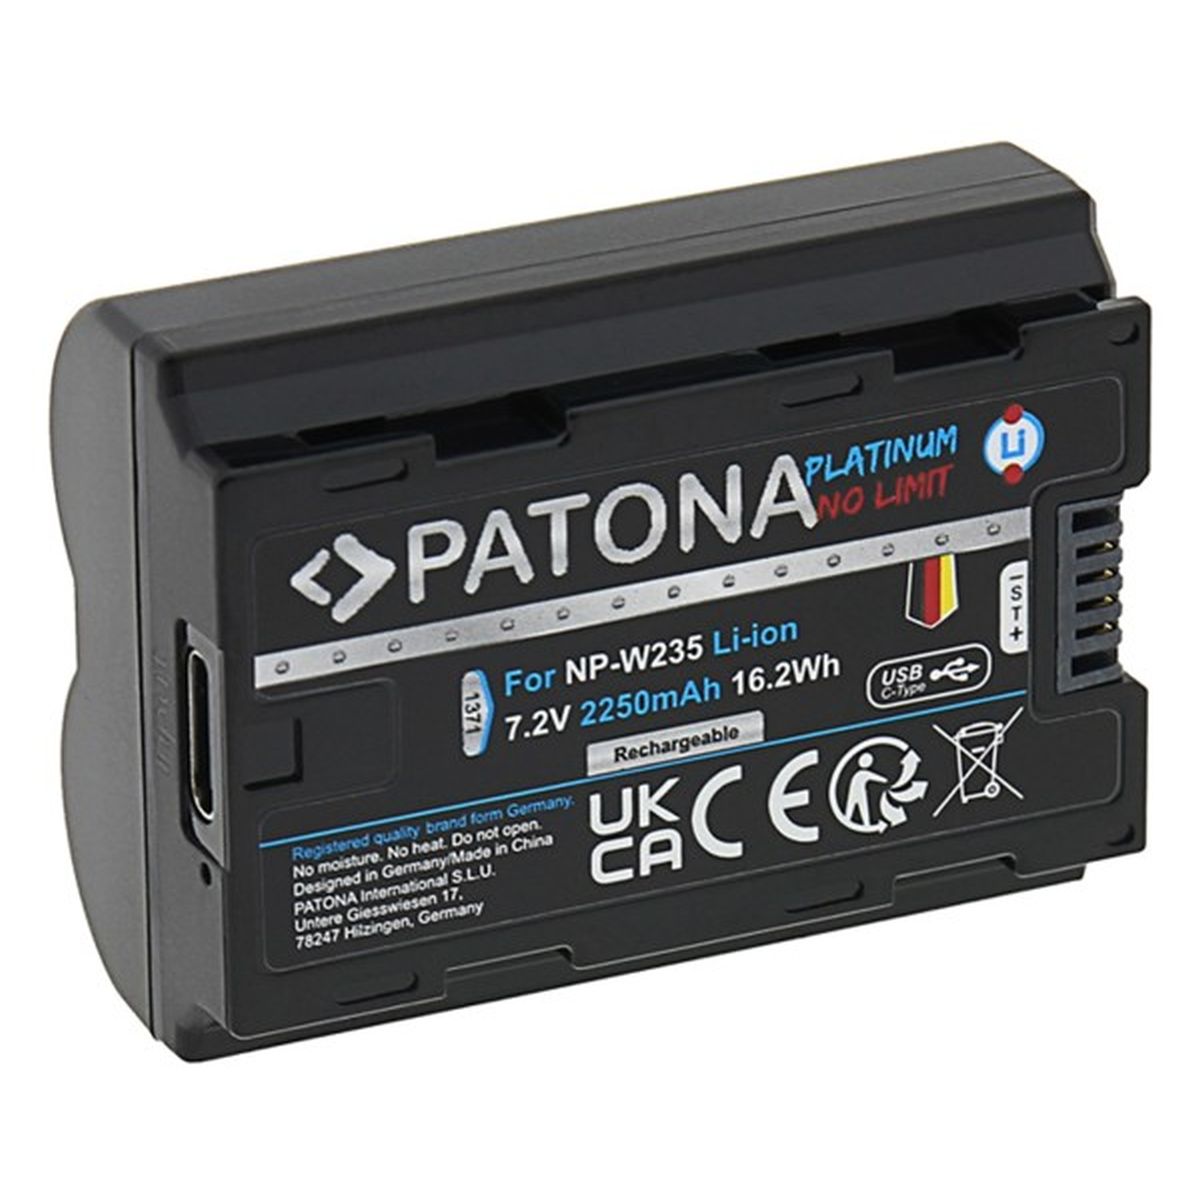 Patona Platinum Akku mit USB-C Input für Fuji FinePix NP-W235 XT-4 XT4